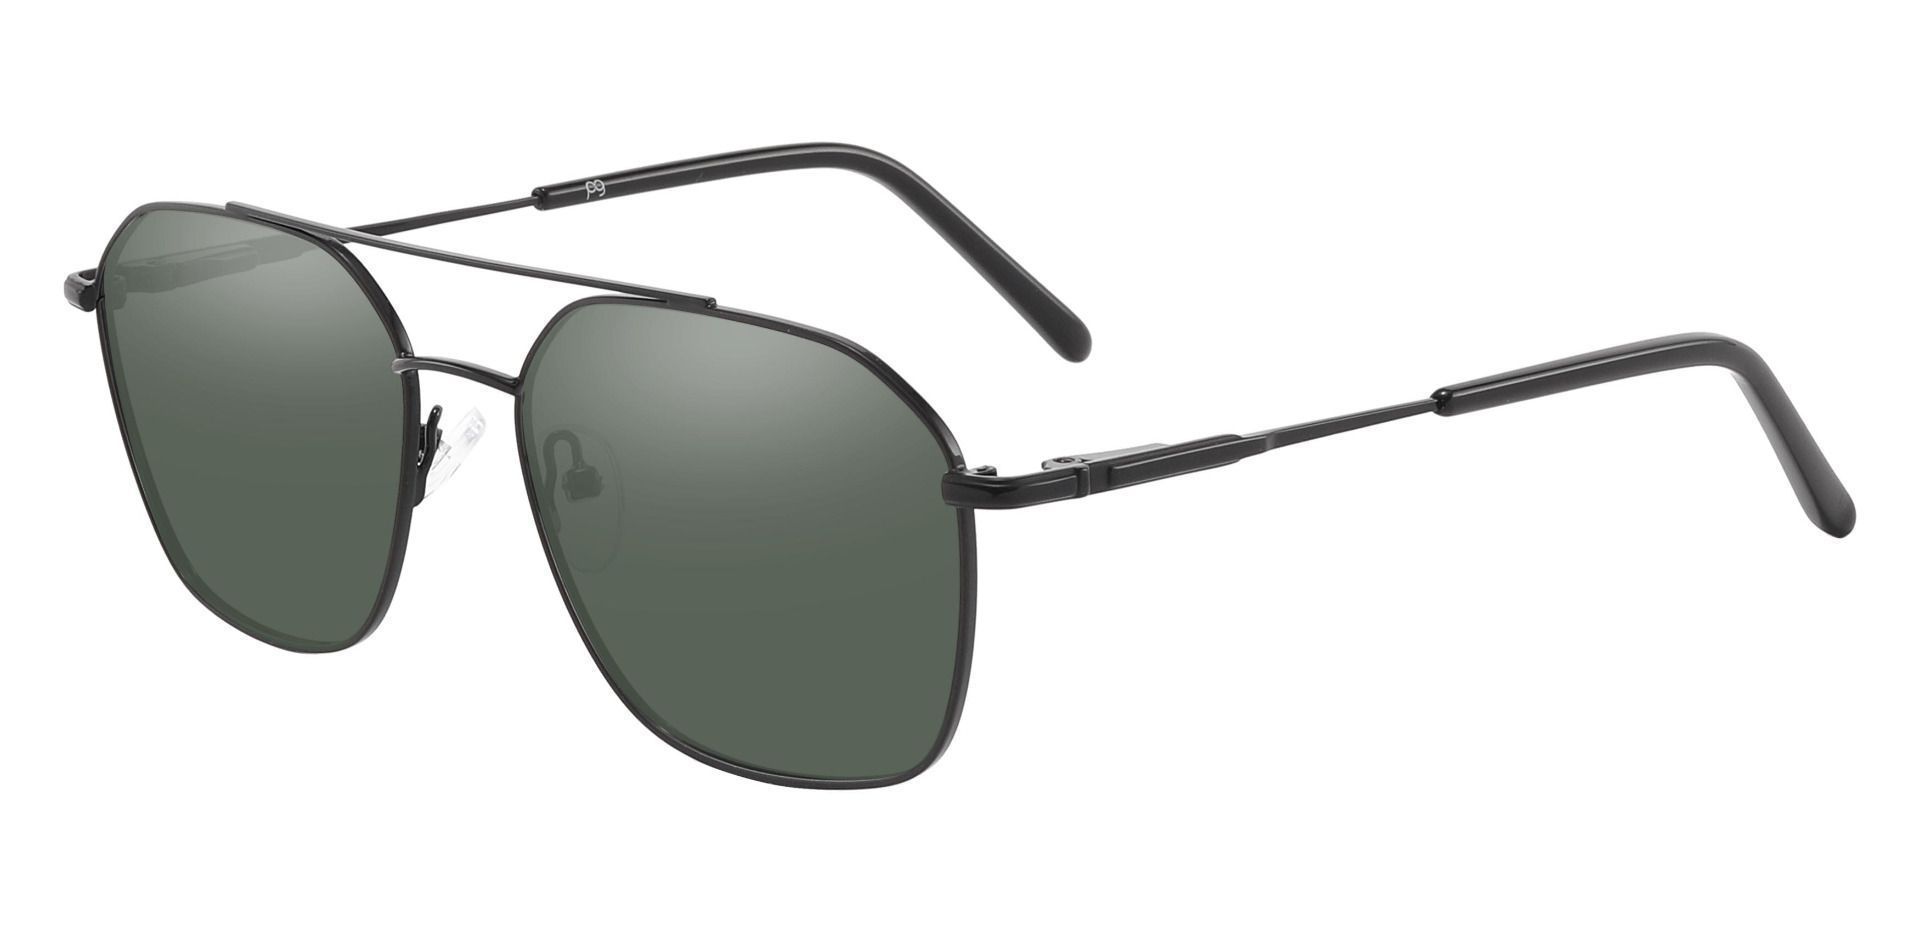 Harvey Aviator Progressive Sunglasses - Black Frame With Green Lenses